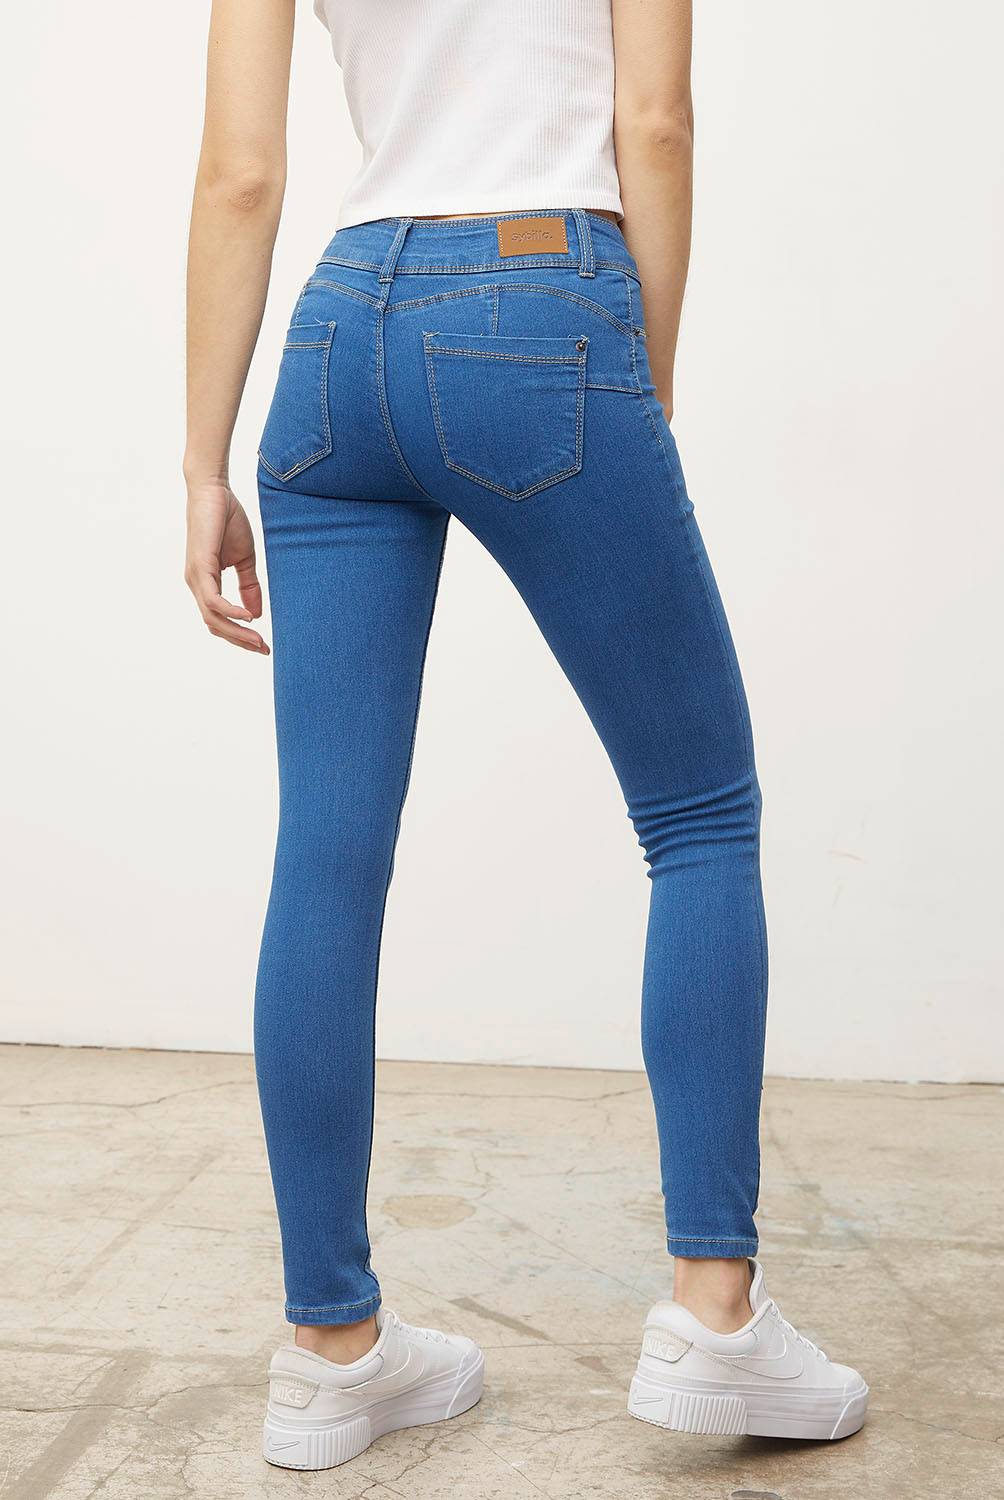 SYBILLA Jeans Skinny Tiro Medio Mujer Sybilla